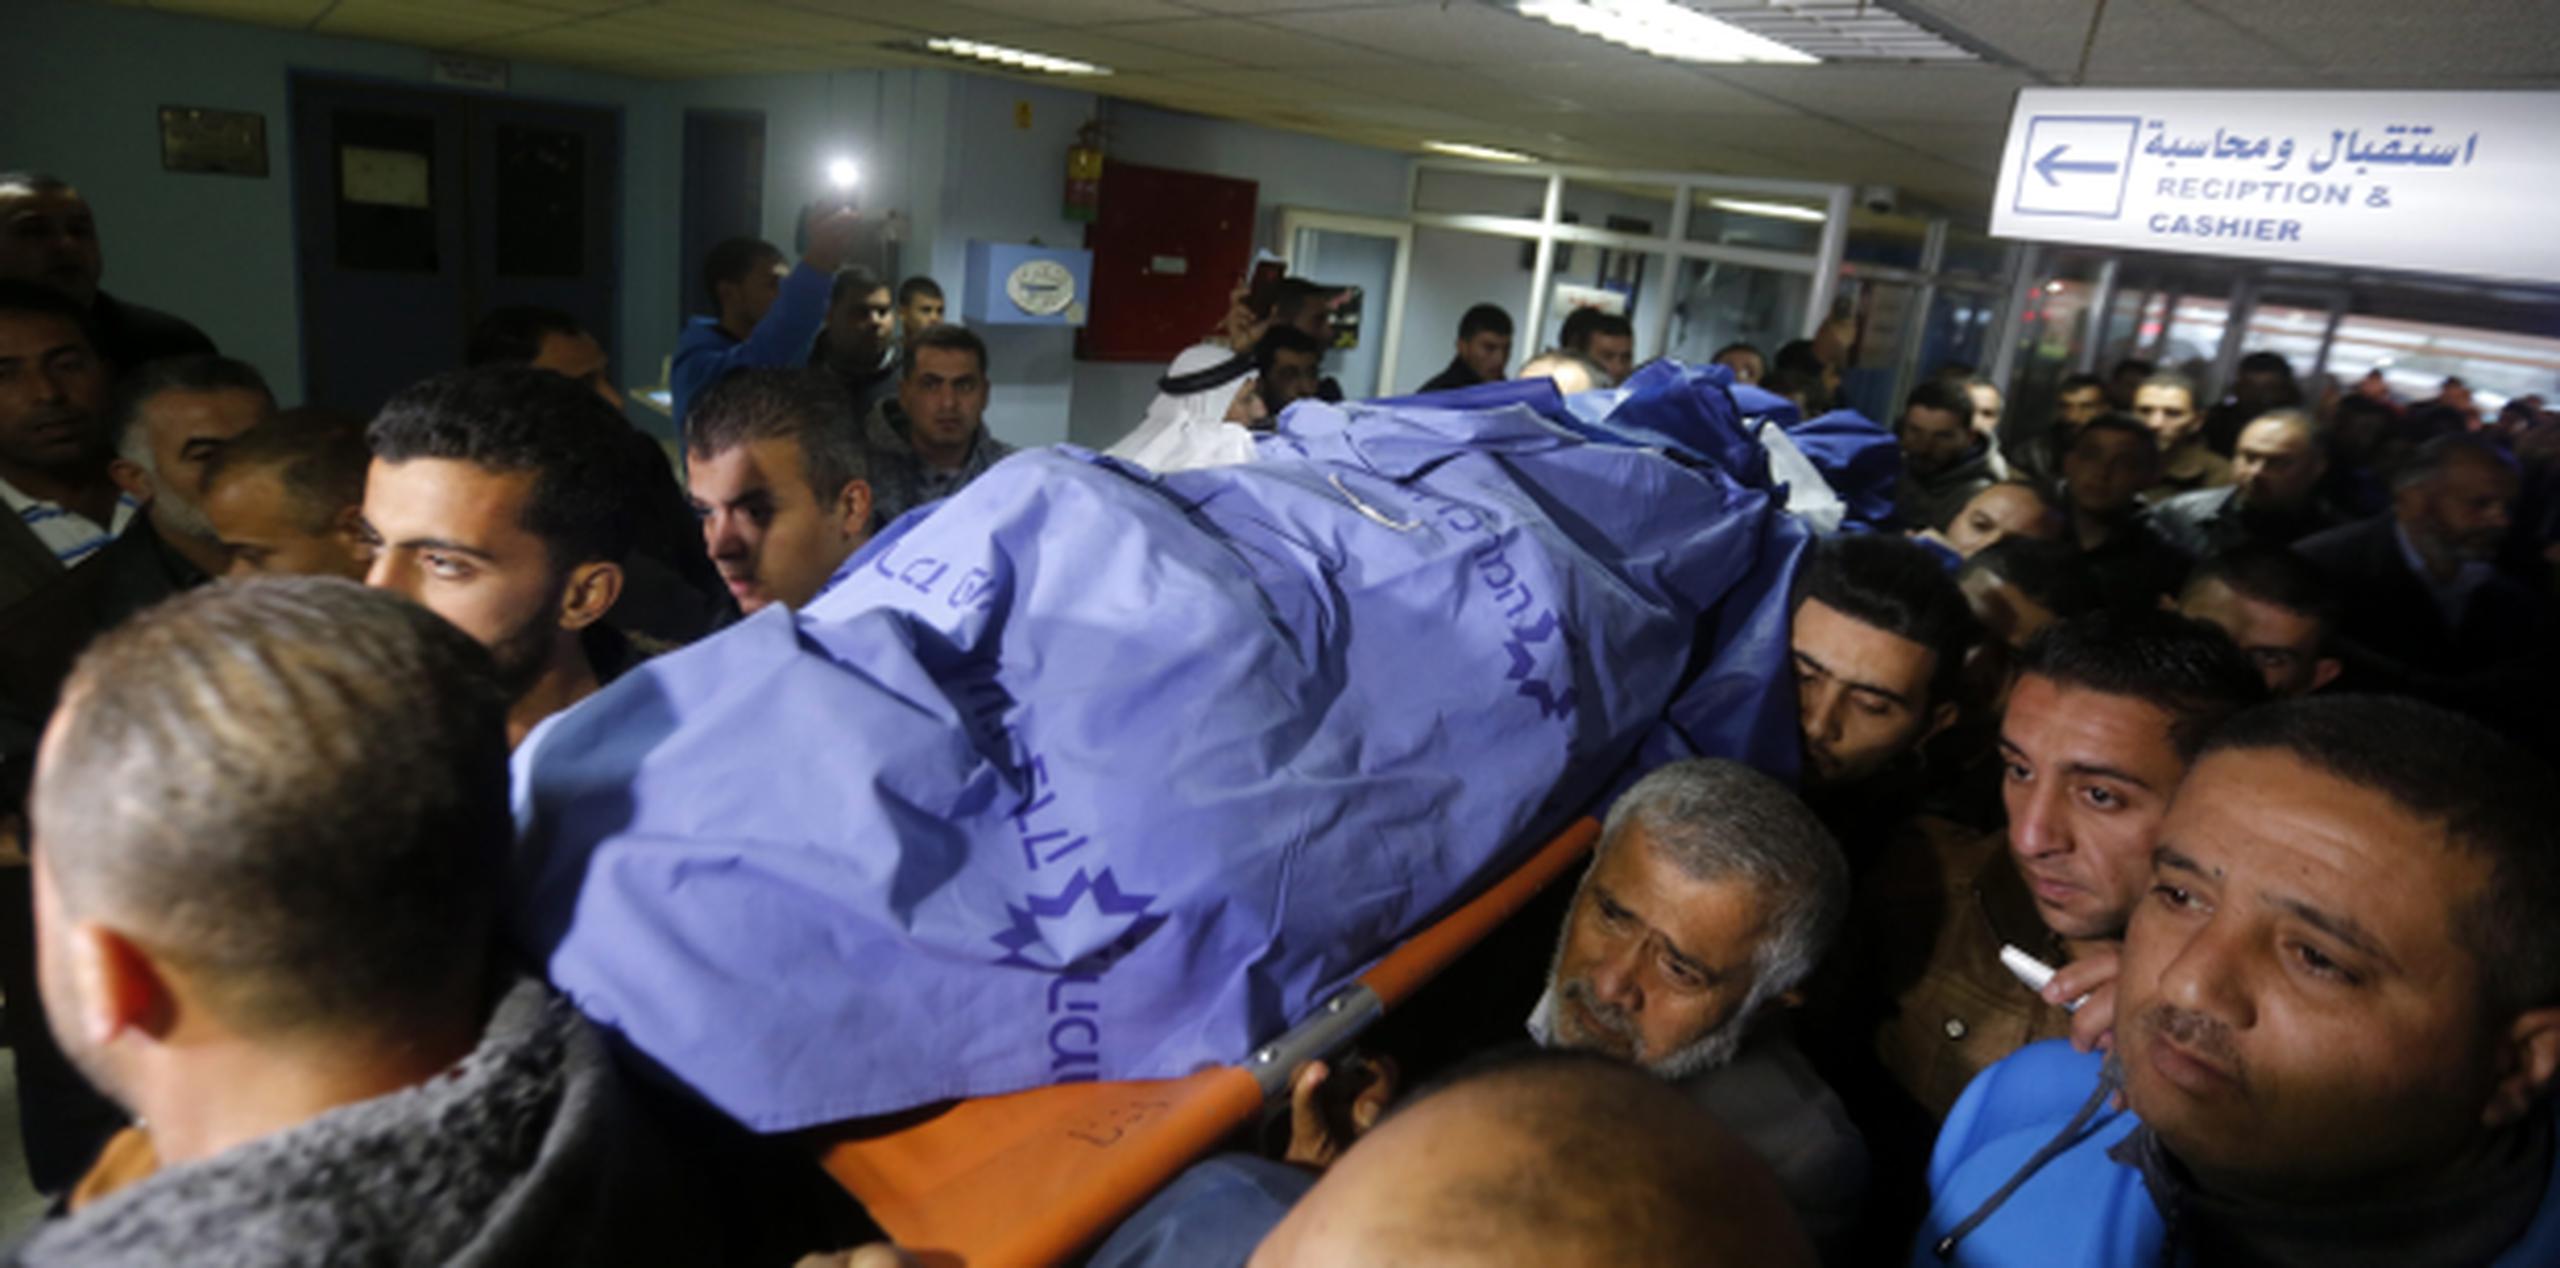 Dolientes de un palestino fallecido en un enfrentamiento con tropas israelíes cargan su cuerpo al salir de un hospital. (AP)